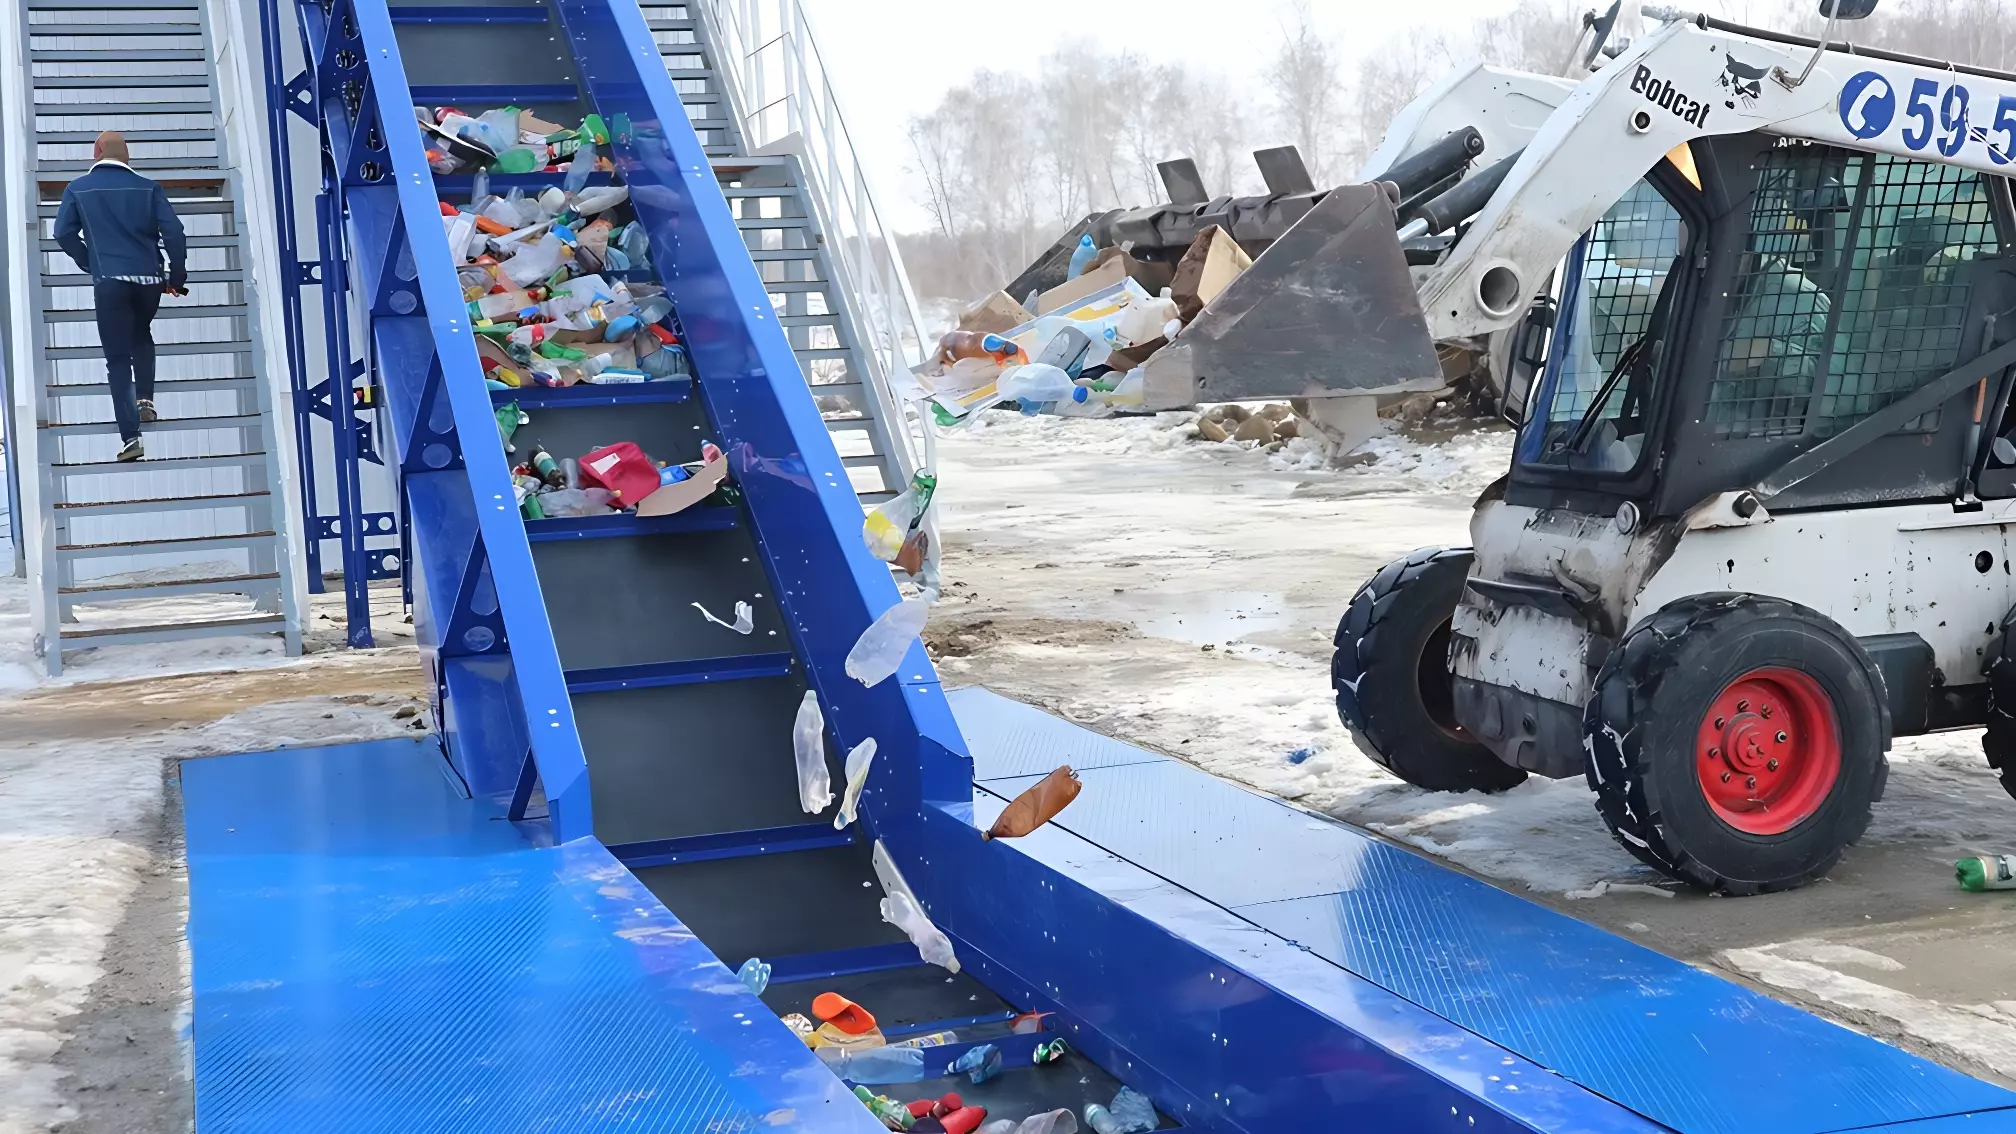 Буцаев: РЭО передаст новым регионам мусорные контейнеры и спецтехнику